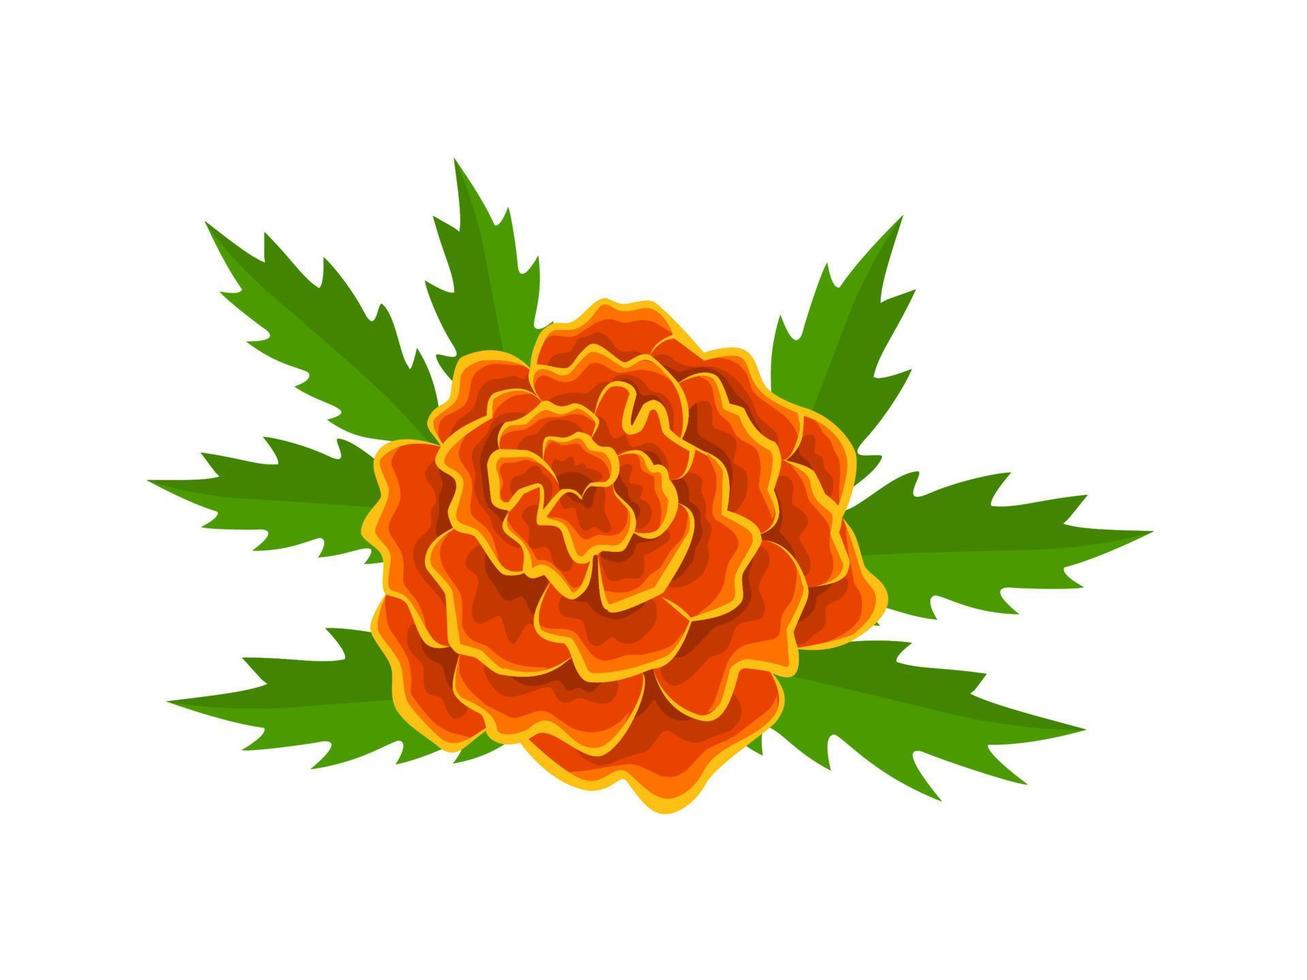 Vektor Illustration, Französisch Ringelblume Blume, mit Grün Blätter, isoliert auf Weiß Hintergrund.